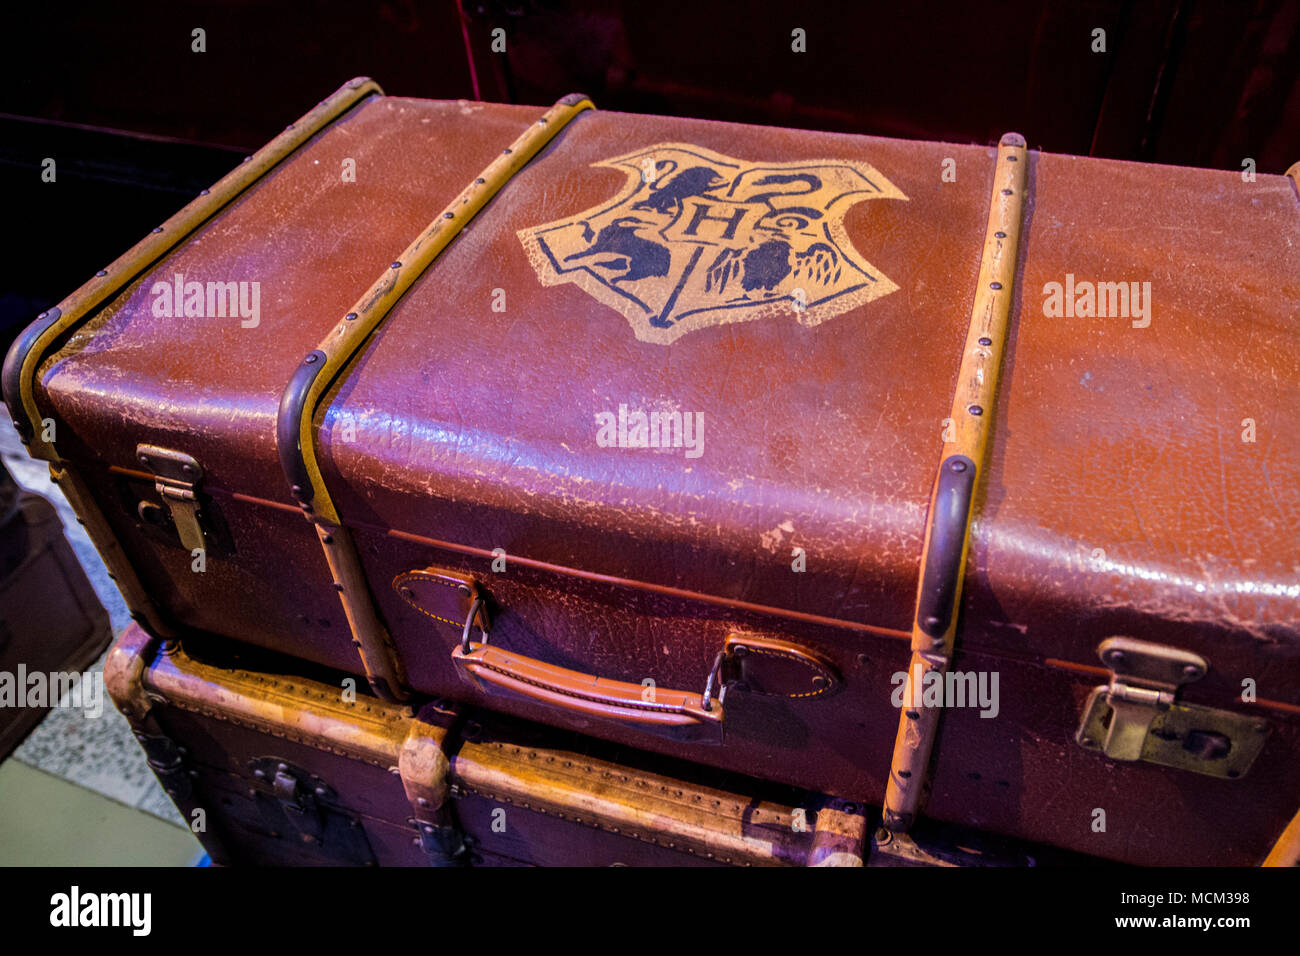 Valigia di harry potter immagini e fotografie stock ad alta risoluzione -  Alamy